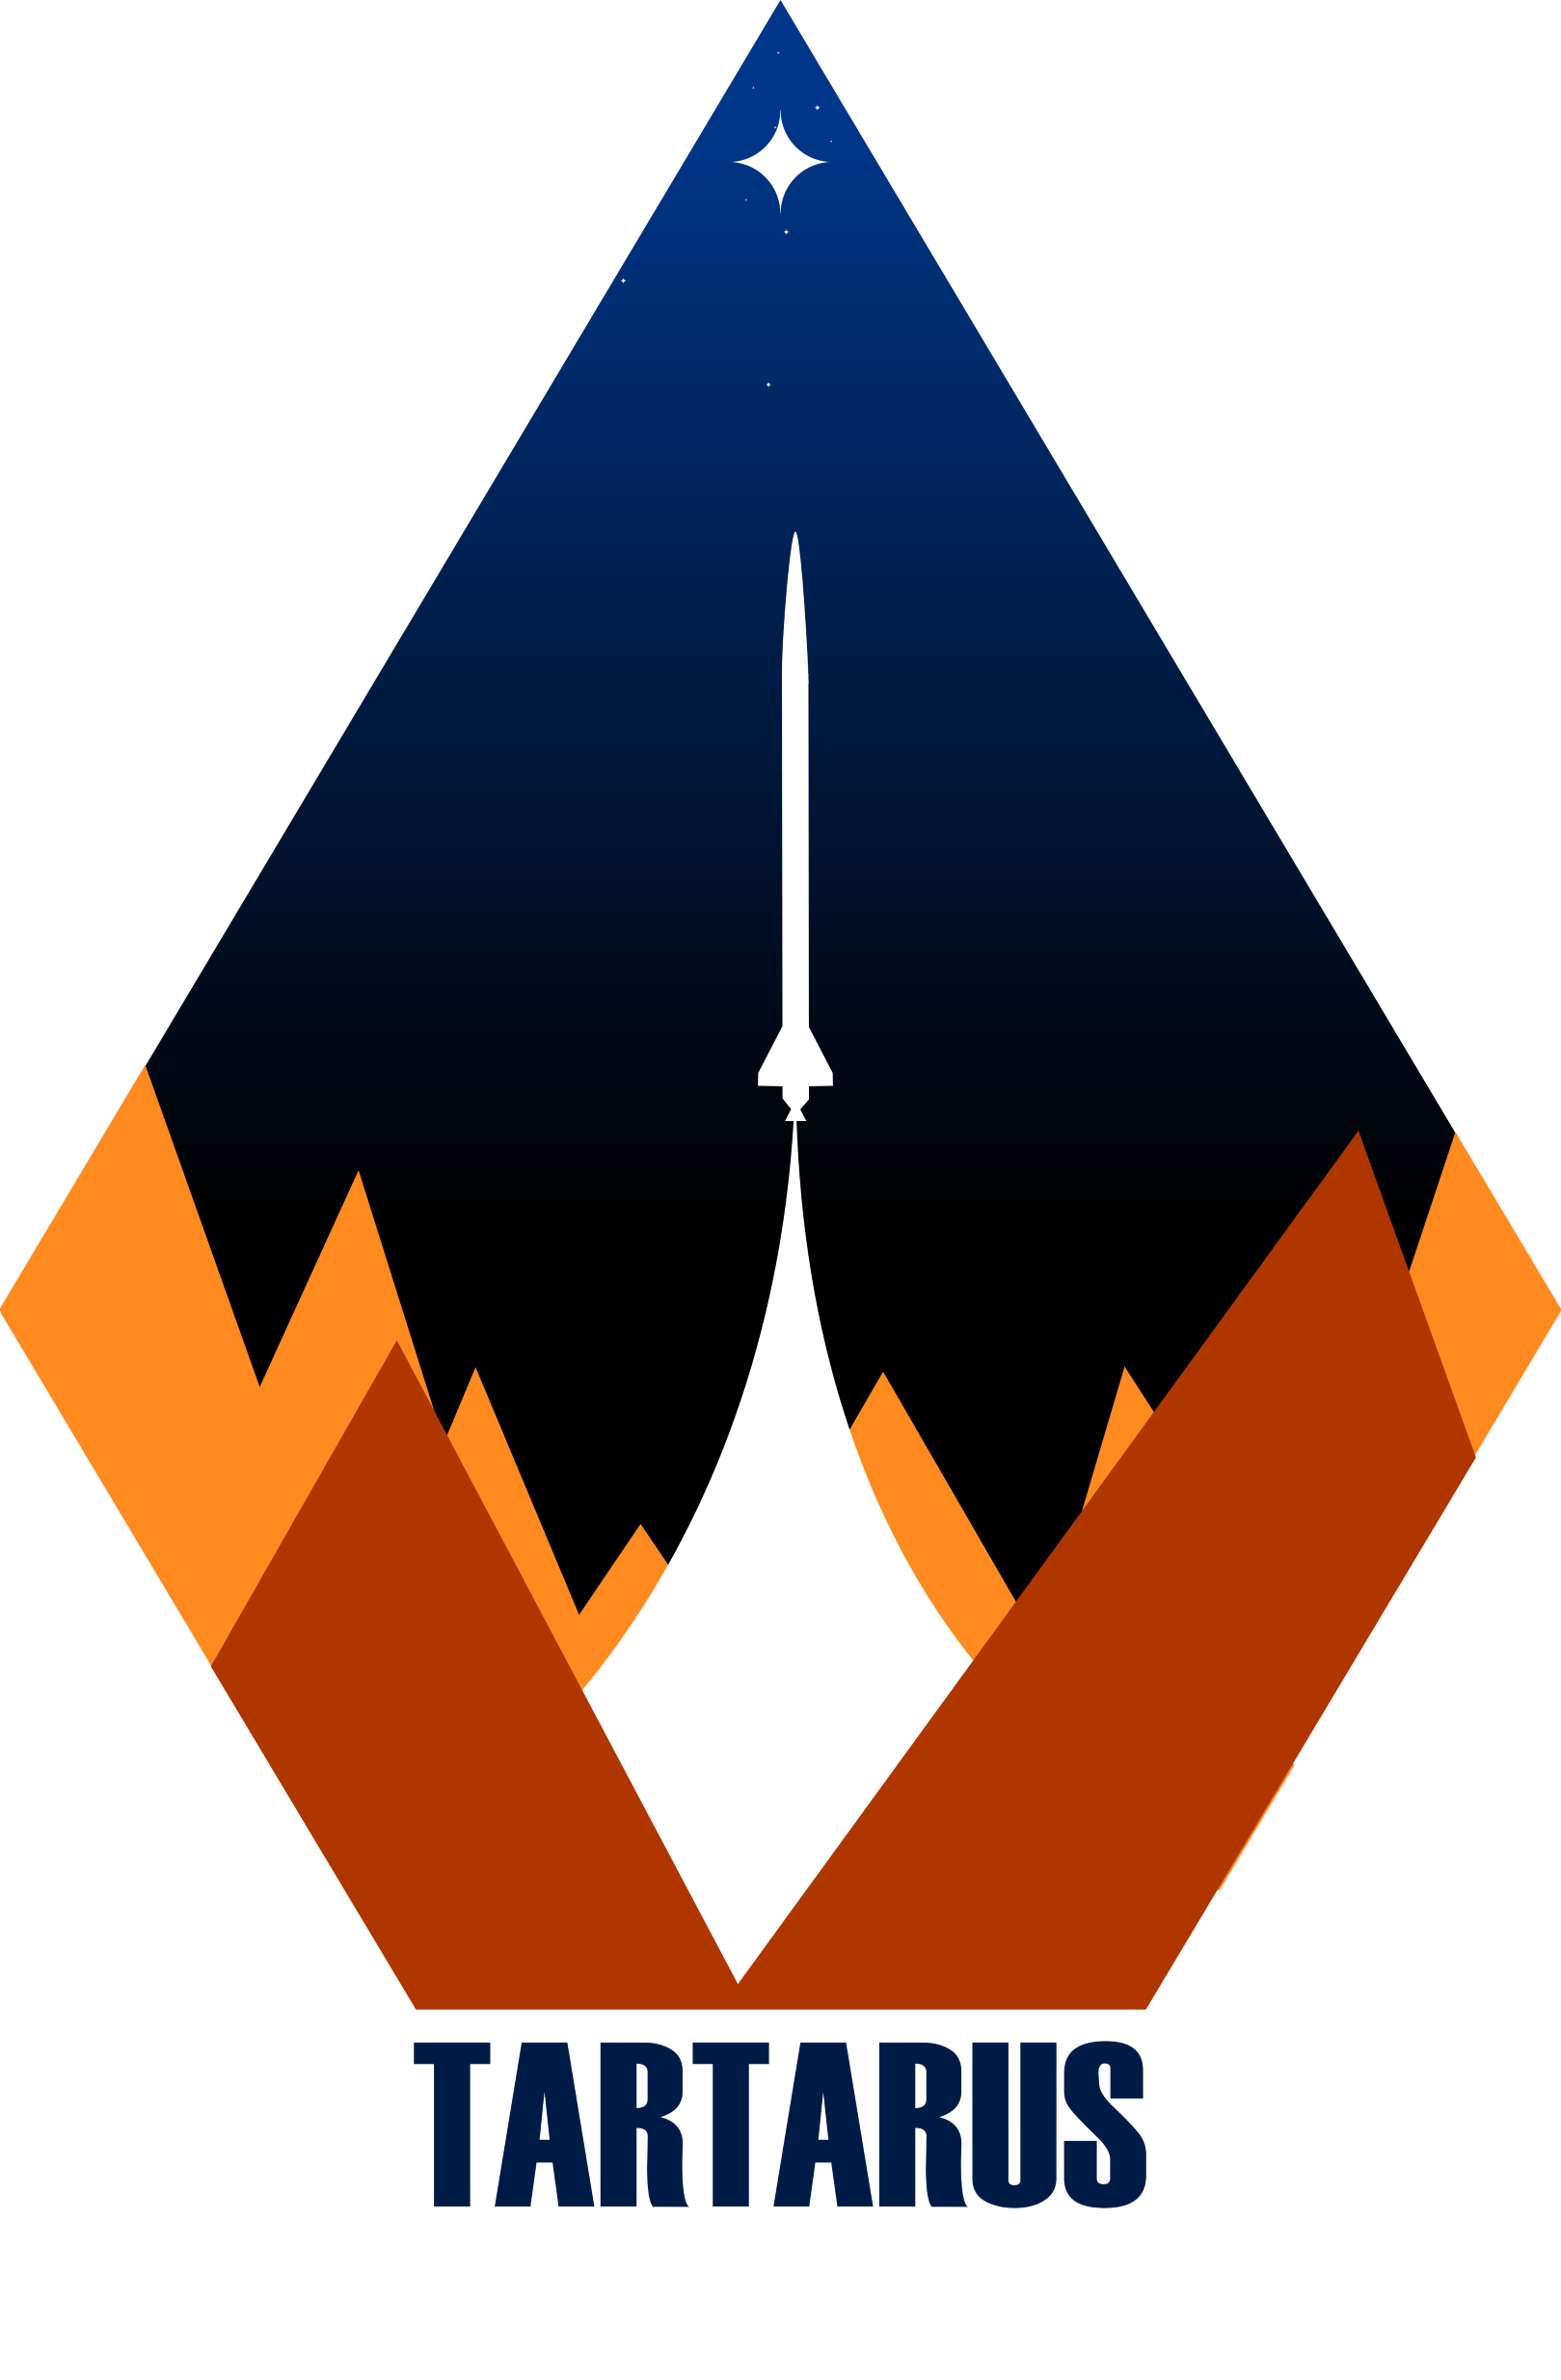 Tartarus Logo NOBG_smol.png